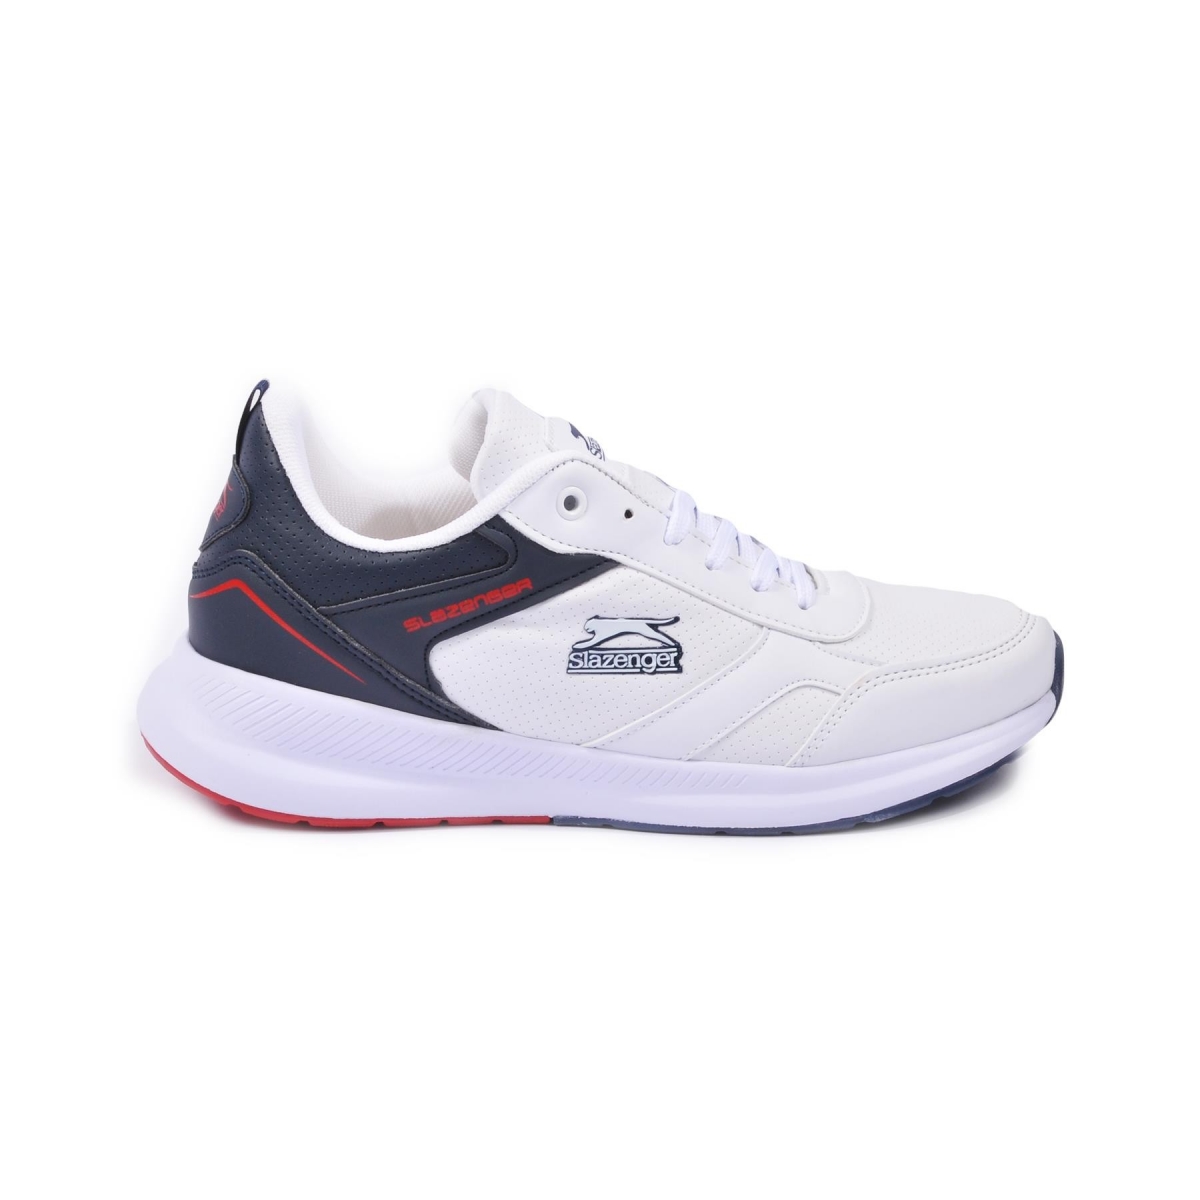 Flo Zero Beyaz-Lacivert Erkek Spor Ayakkabı. 2